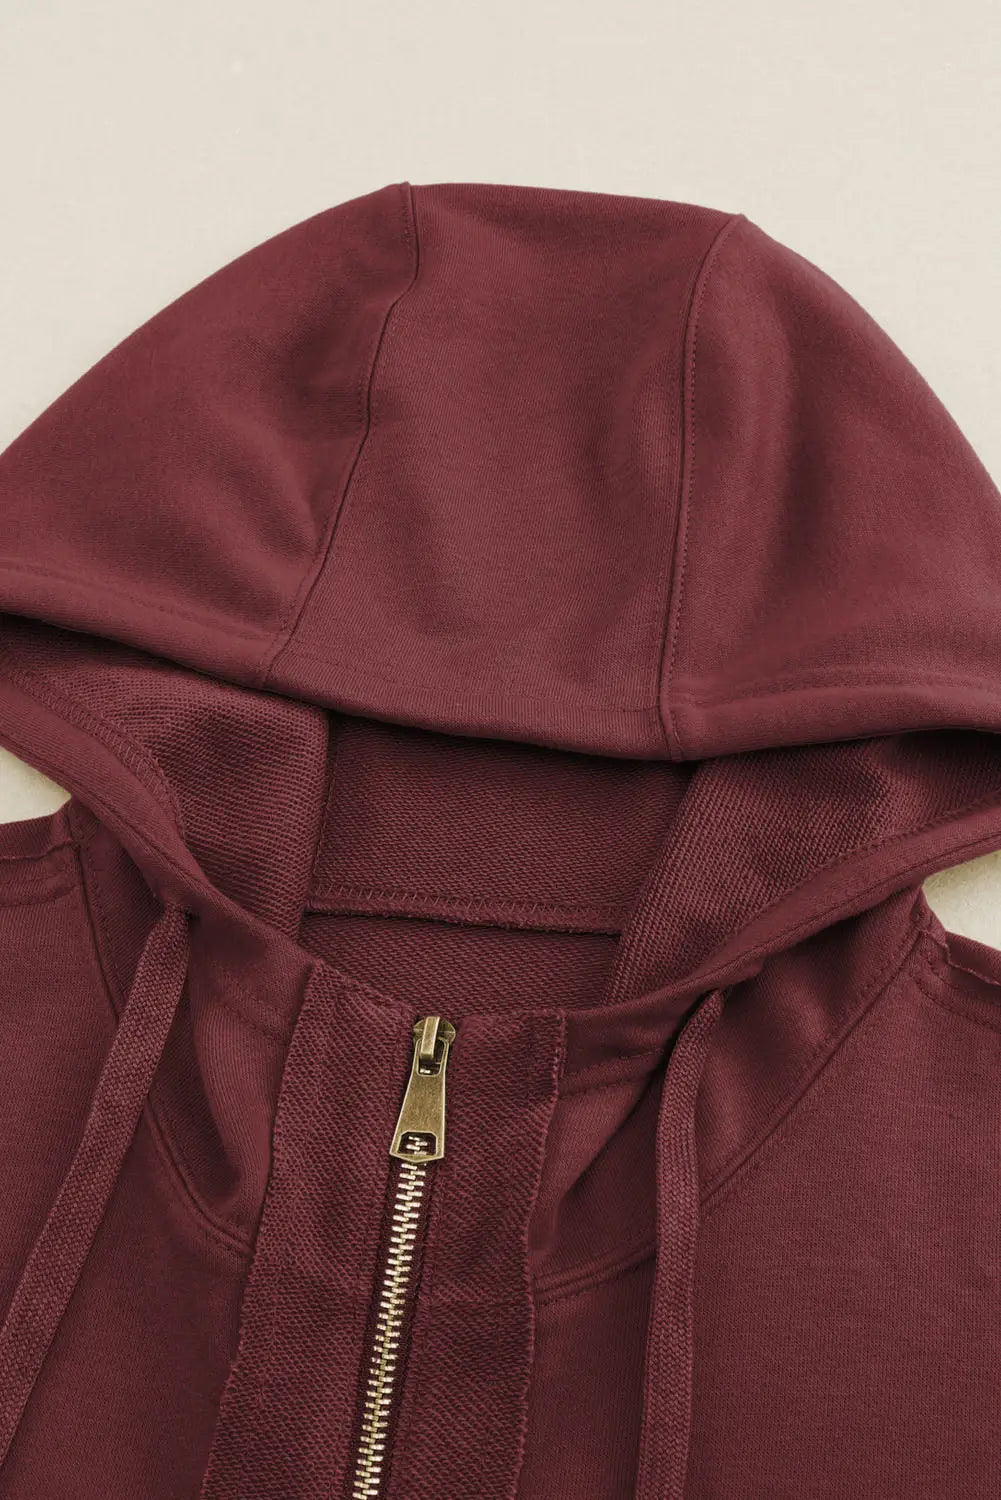 Brown raw edge exposed seam full zip hoodie - sweatshirts & hoodies